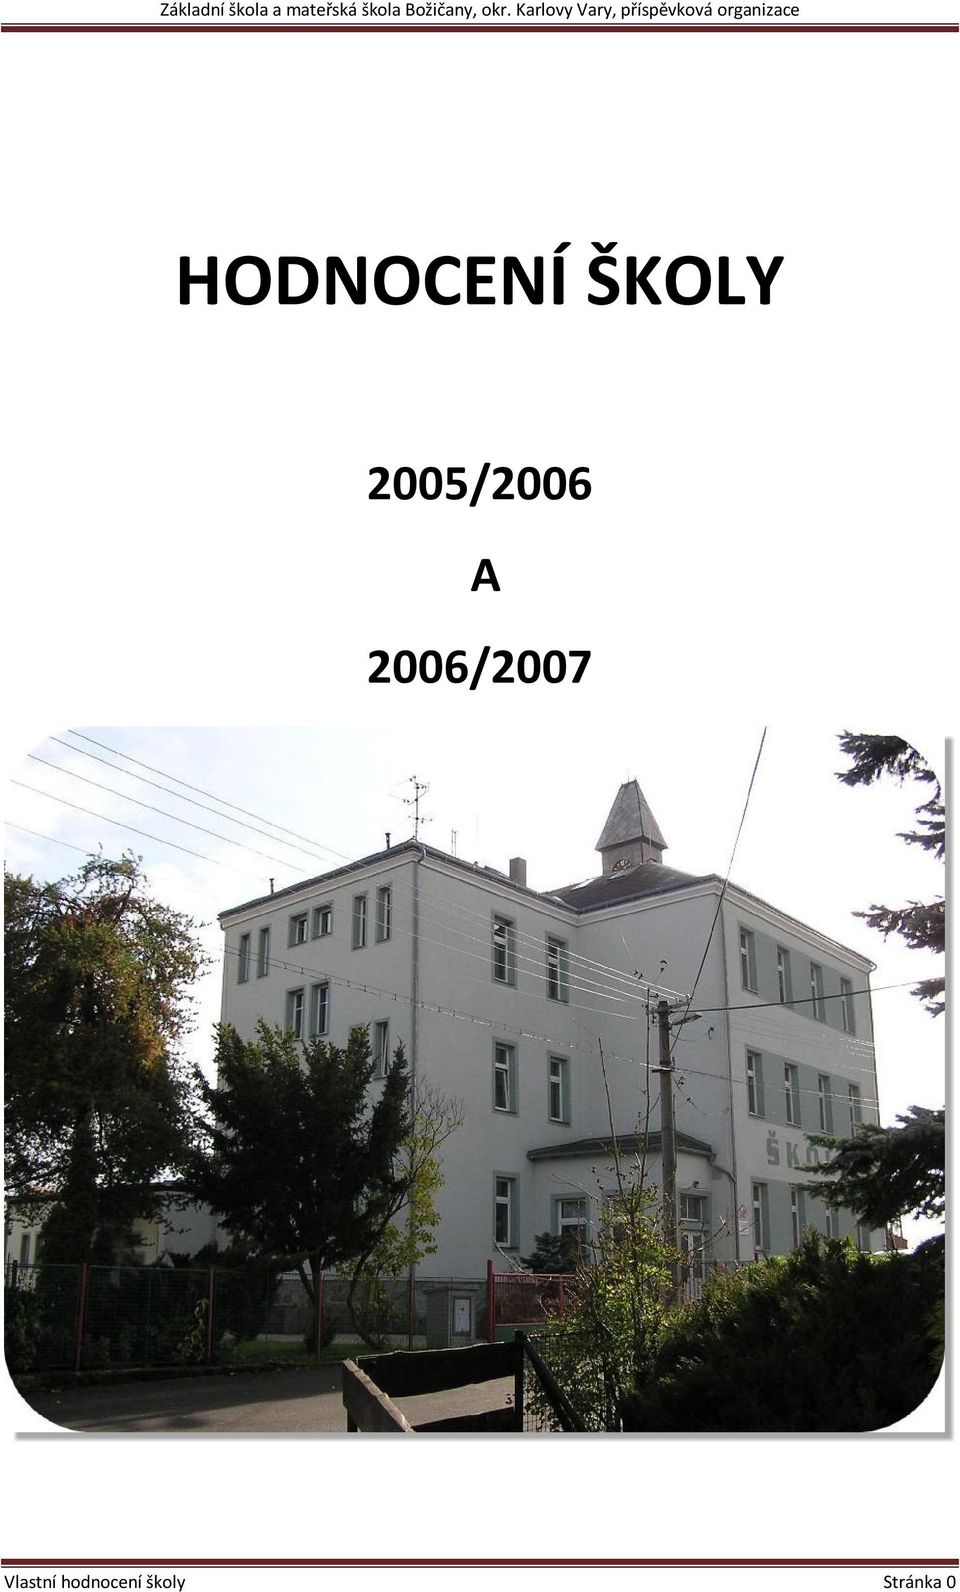 2005/2006